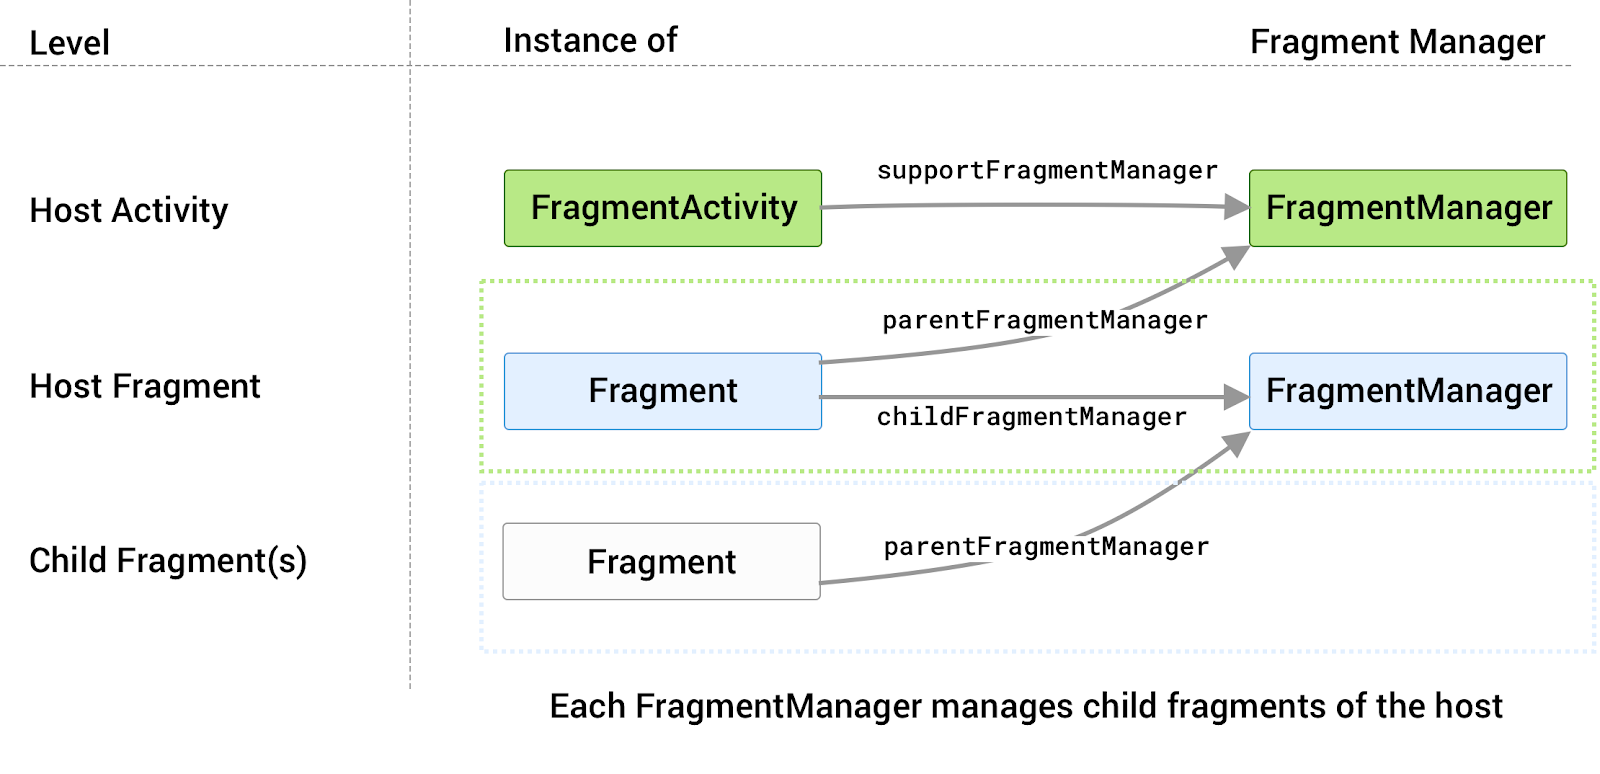 mỗi máy chủ đều được liên kết với FragmentManager riêng
            có chức năng quản lý các mảnh con